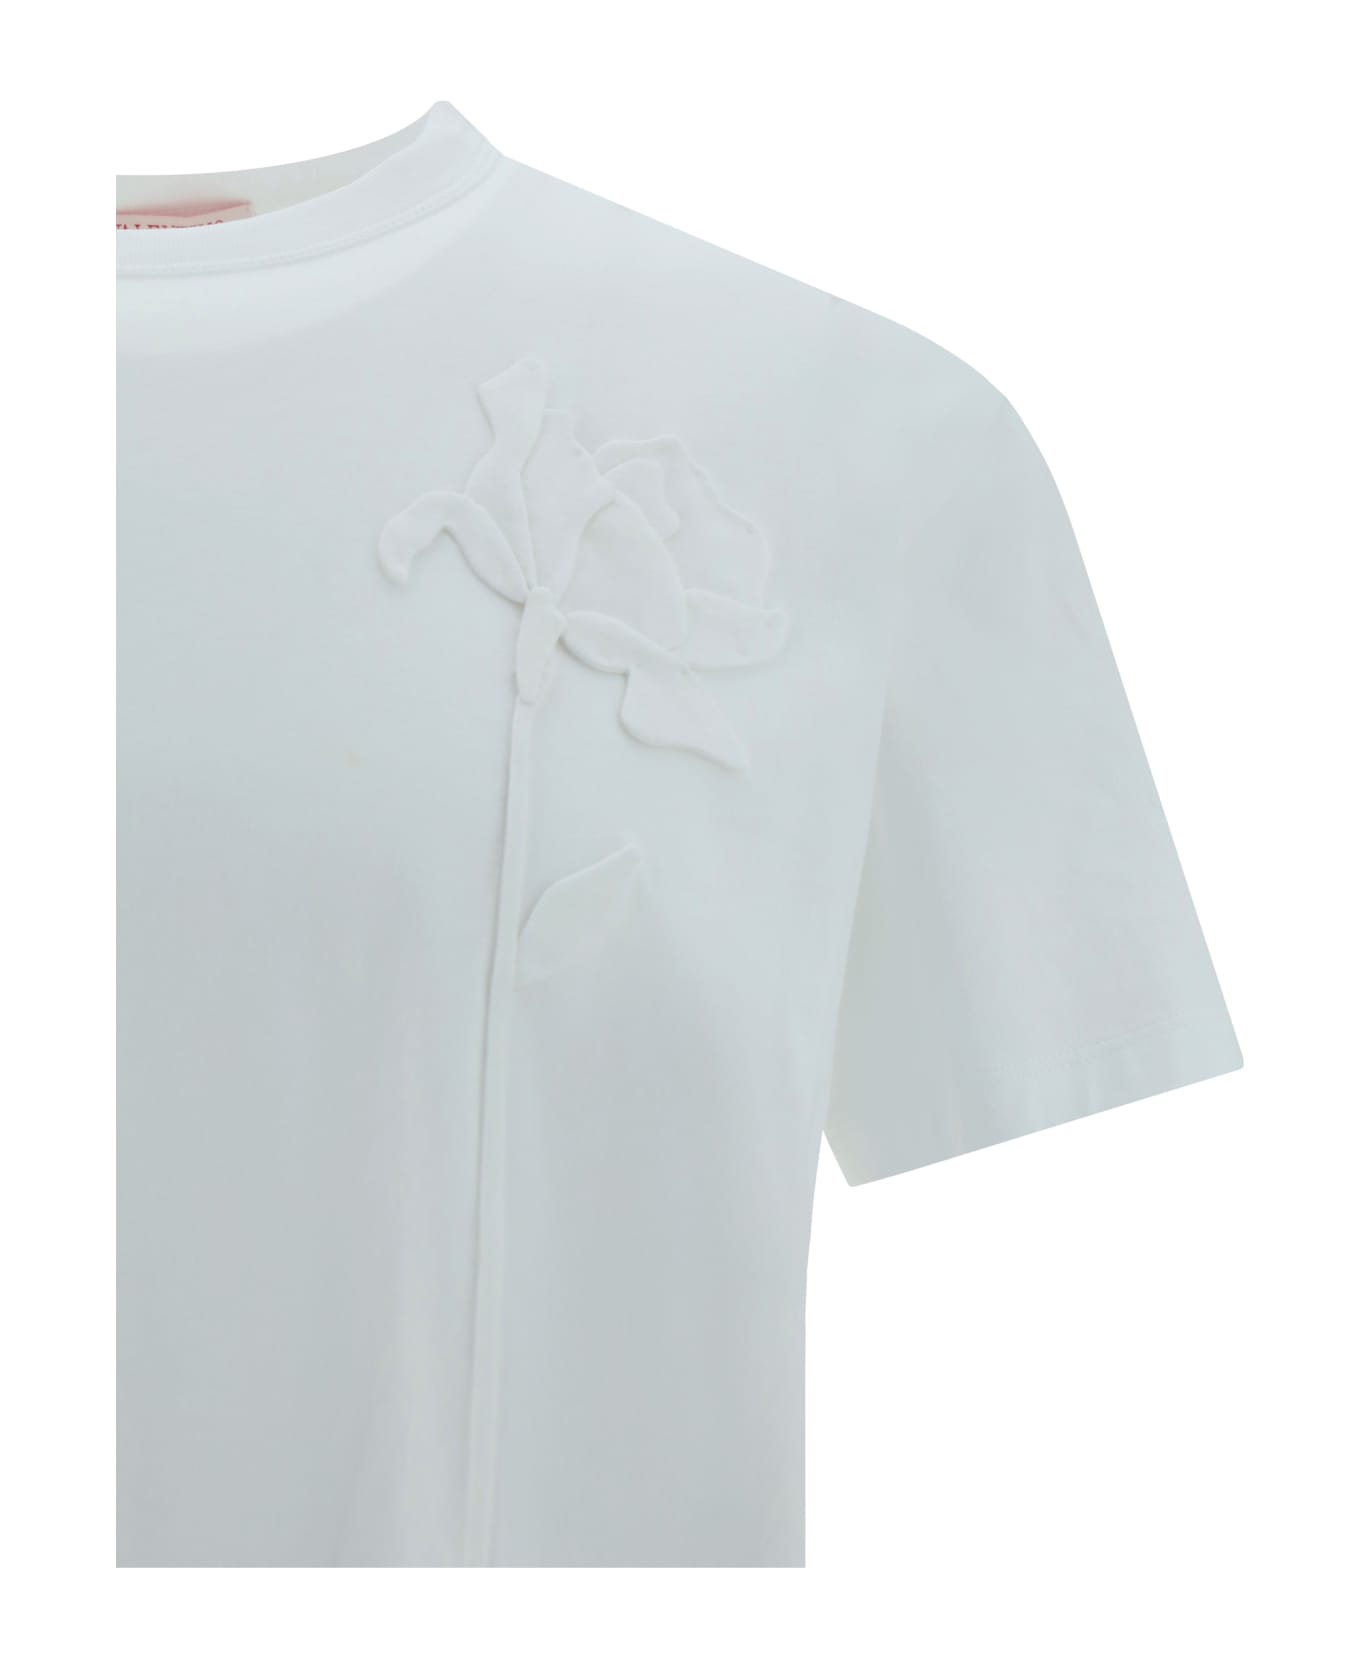 Valentino T-shirt - White